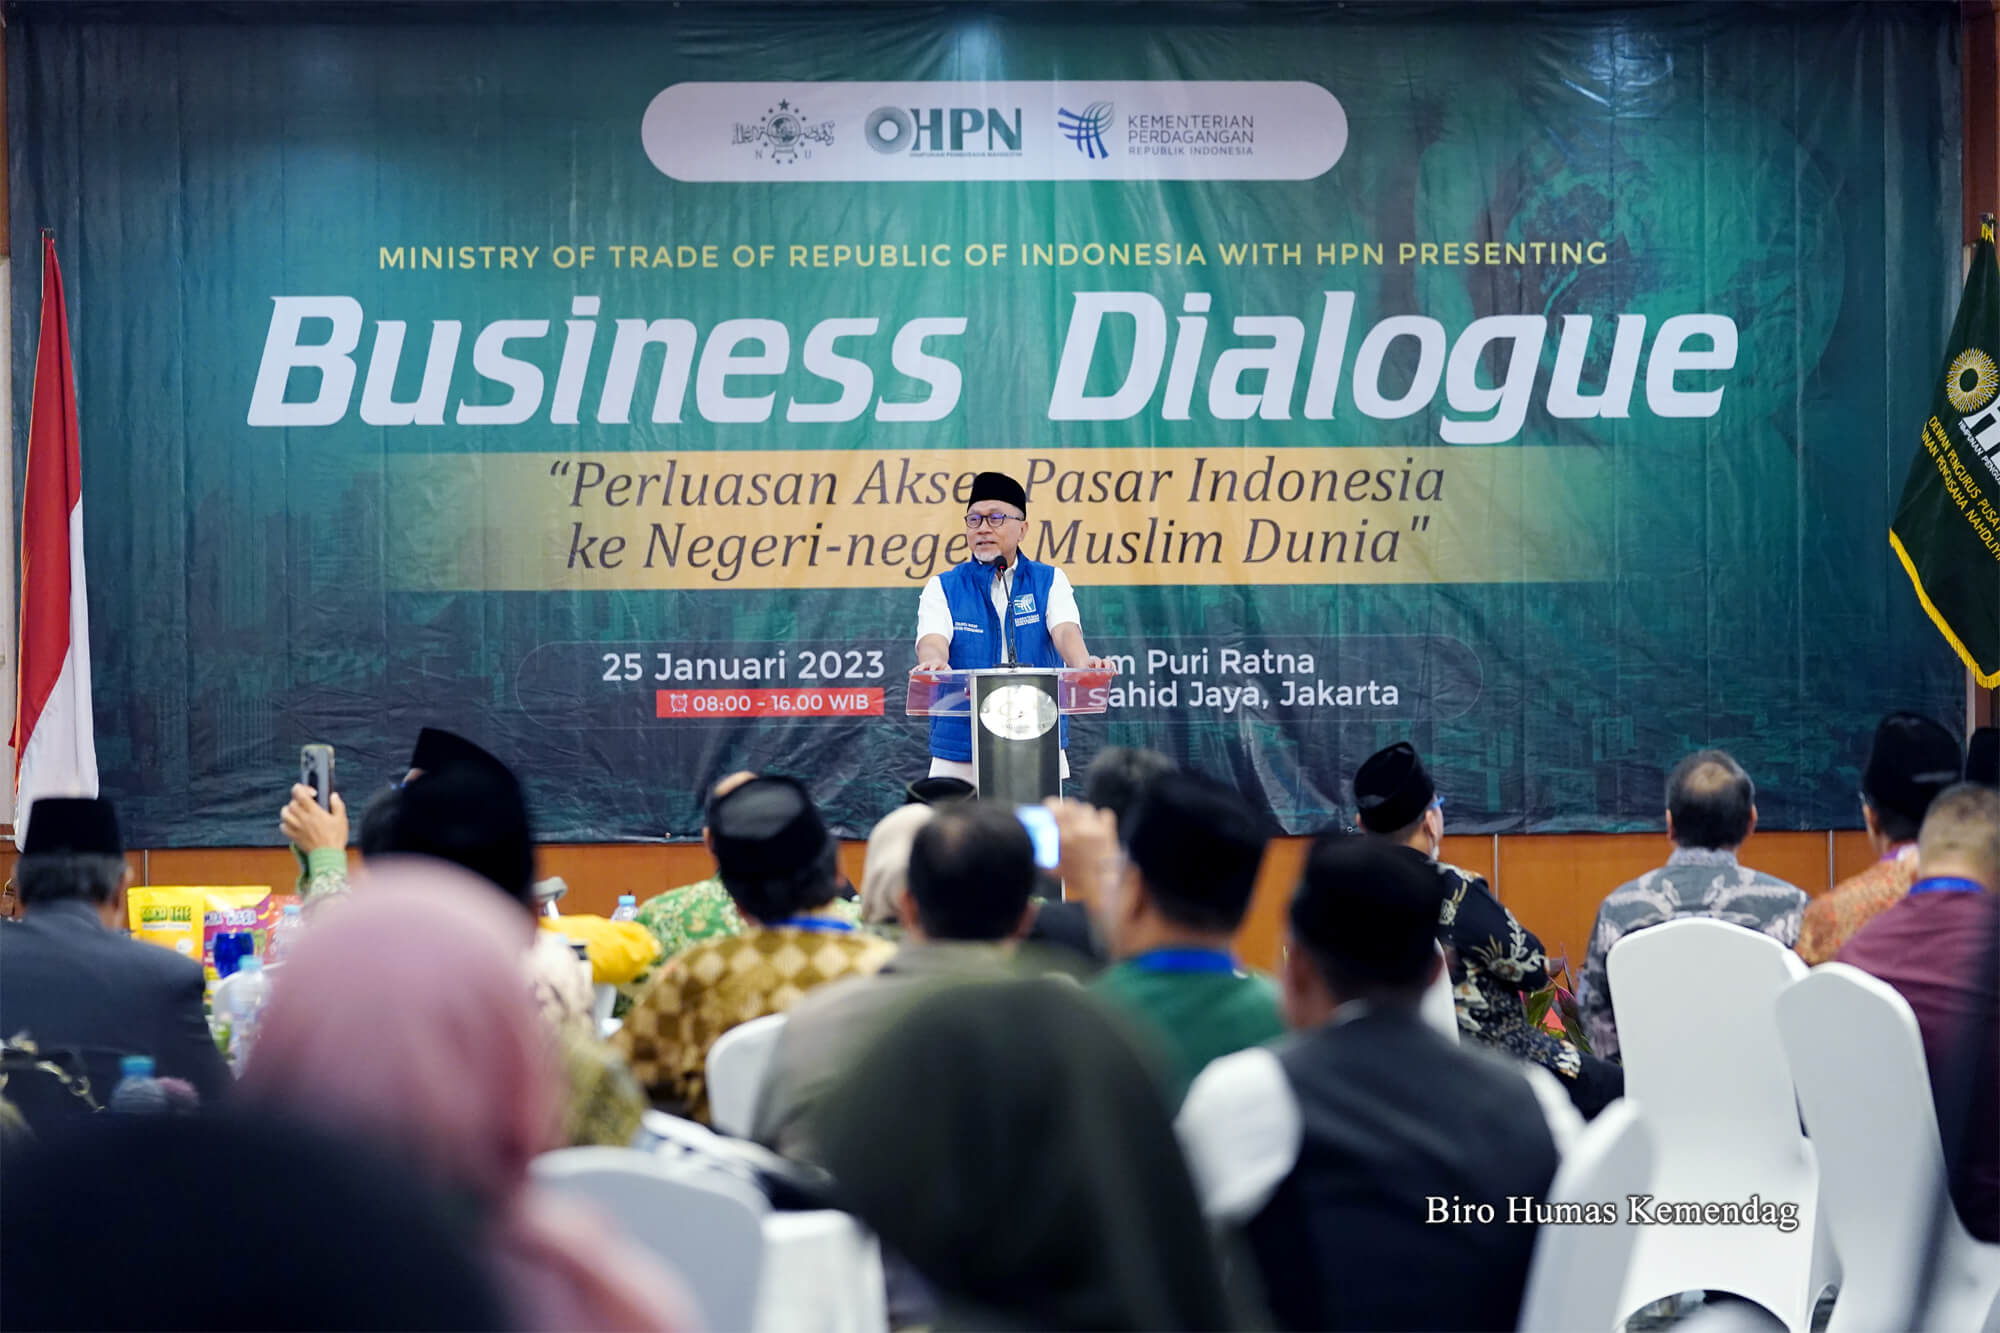 Menteri Perdagangan, Zulkifli Hasan memberikan sambutan pada Dialog Bisnis Himpunan Pengusaha Nahdliyin dengan tema “Perluasan Akses Pasar Indonesia ke Negeri Muslim Dunia” di Hotel Grand Sahid Jaya, Jakarta, Rabu (25 Des).